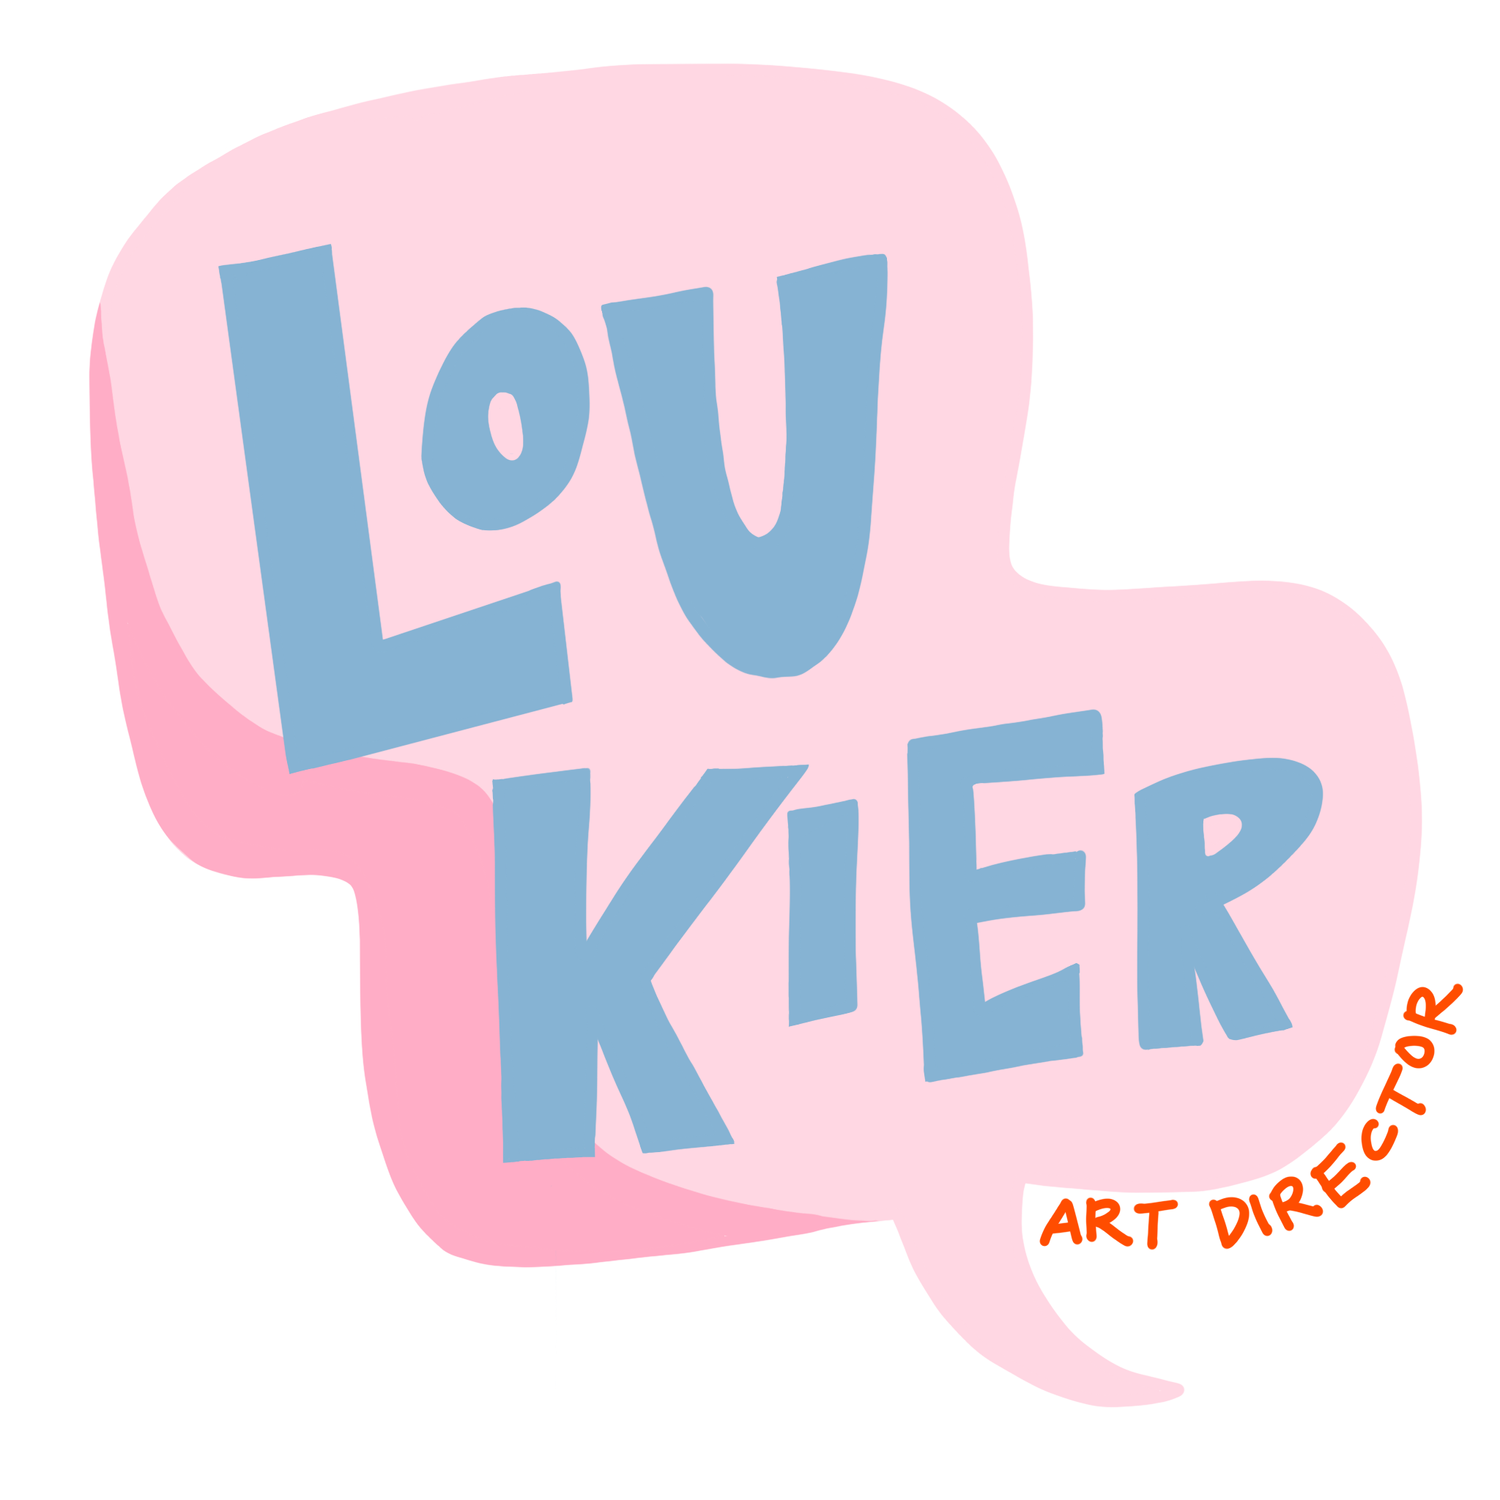 Lou Kier